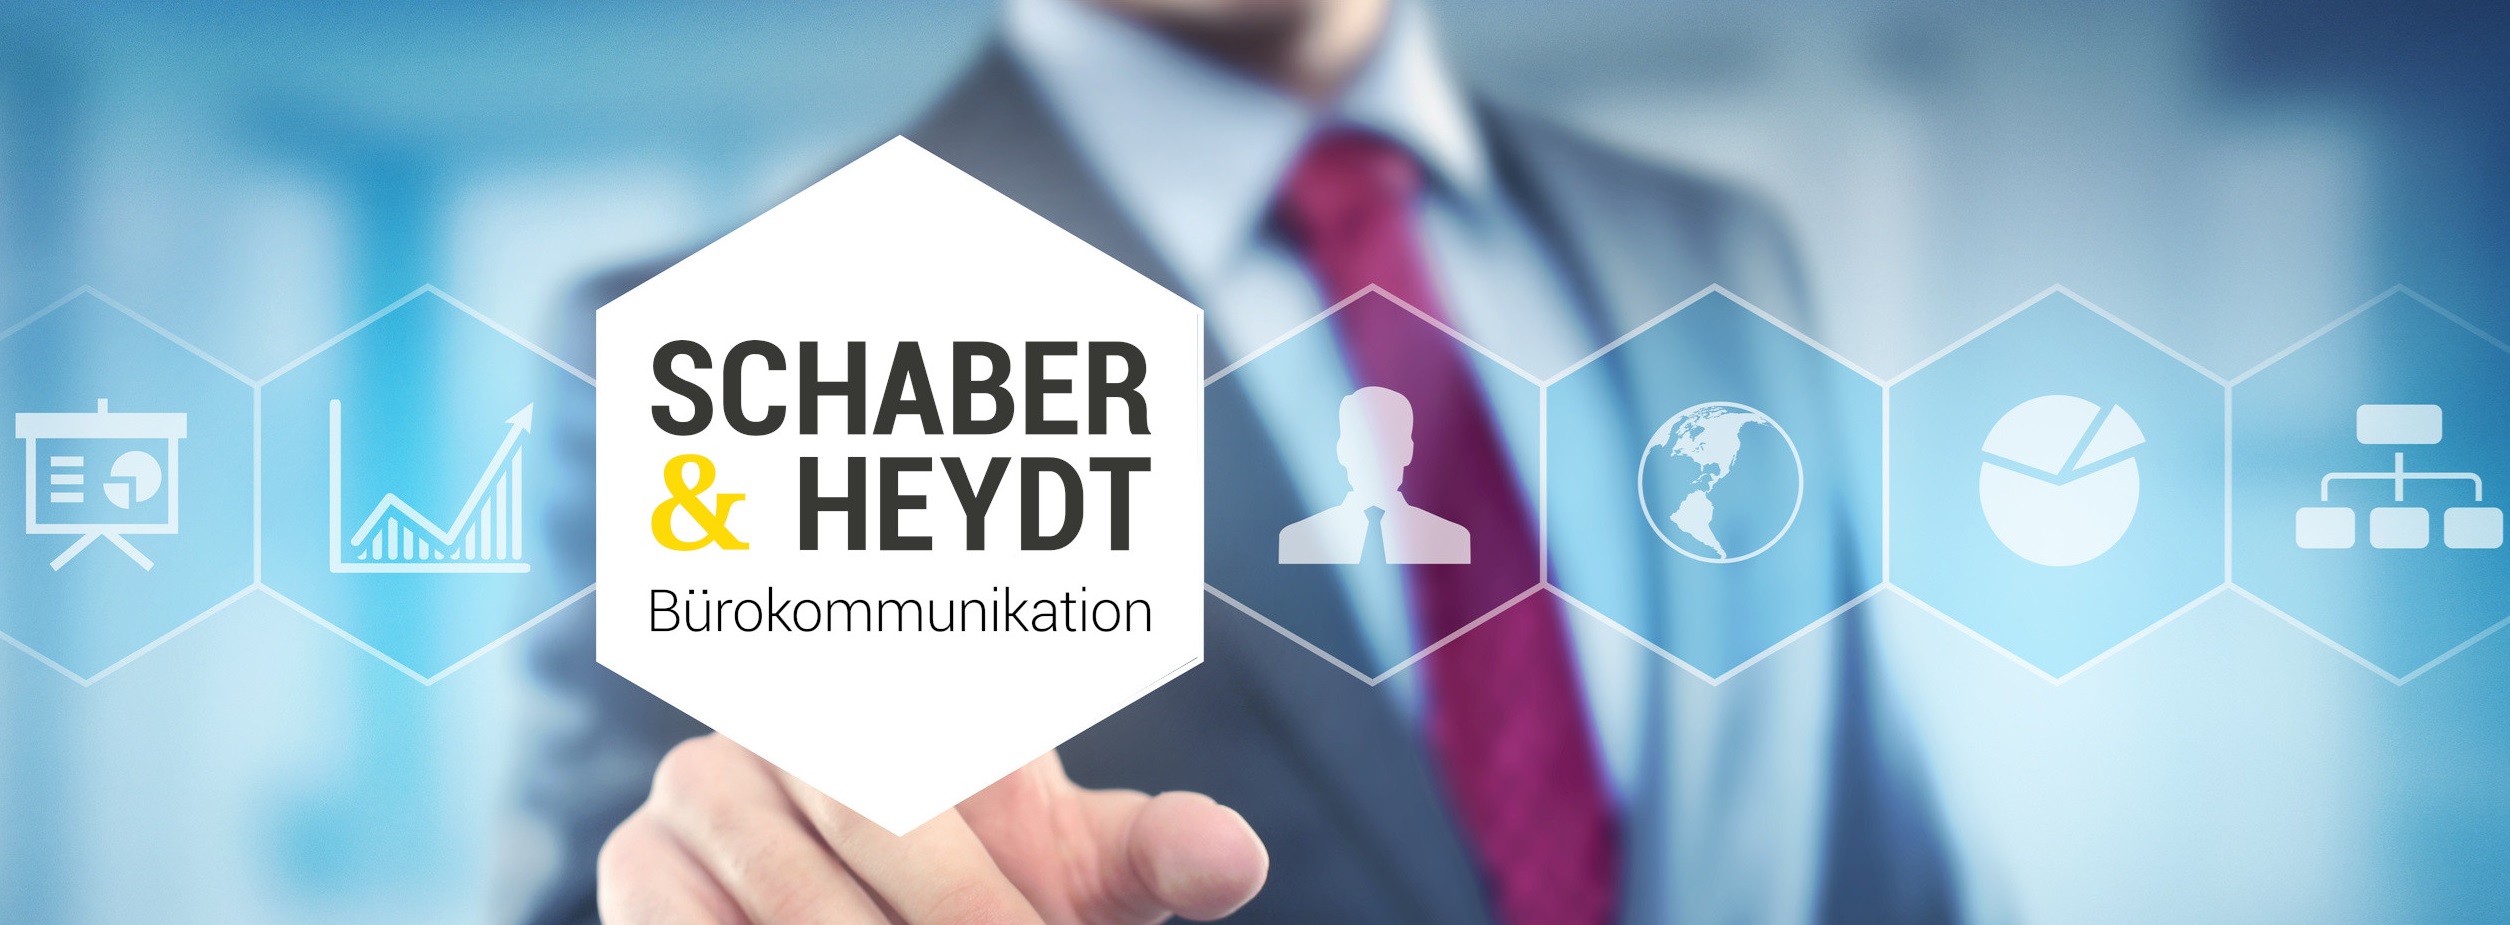 Schaber & Heydt GbR - Bürokommunikation